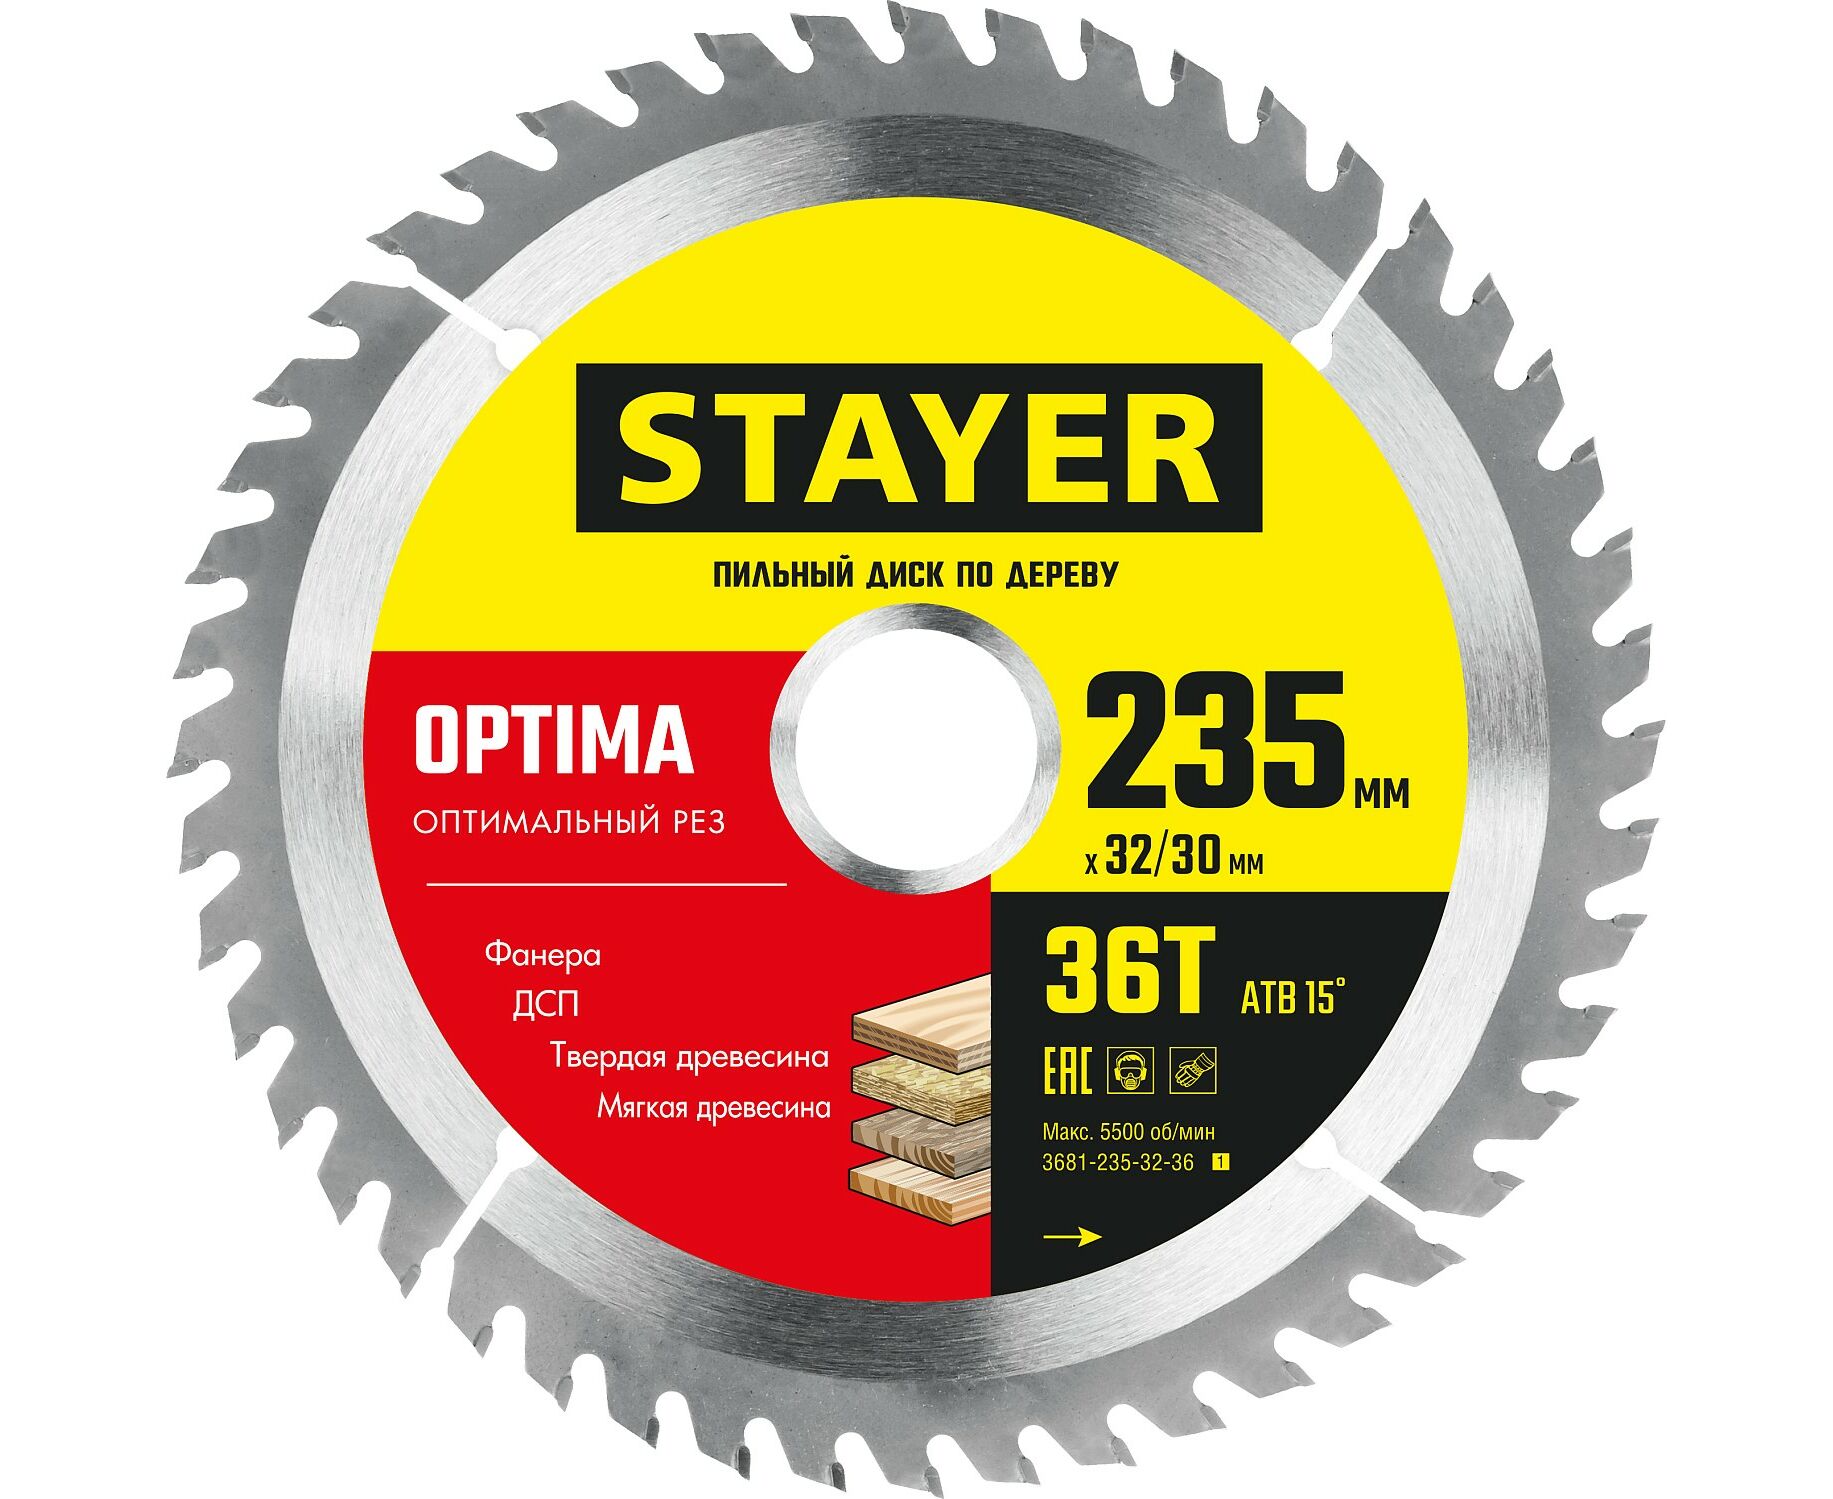 Пильный диск STAYER OPTIMA 235 x 32/30мм 36Т, по дереву, оптимальный рез пильный диск stayer optima 216 x 32 30мм 36т по дереву оптимальный рез